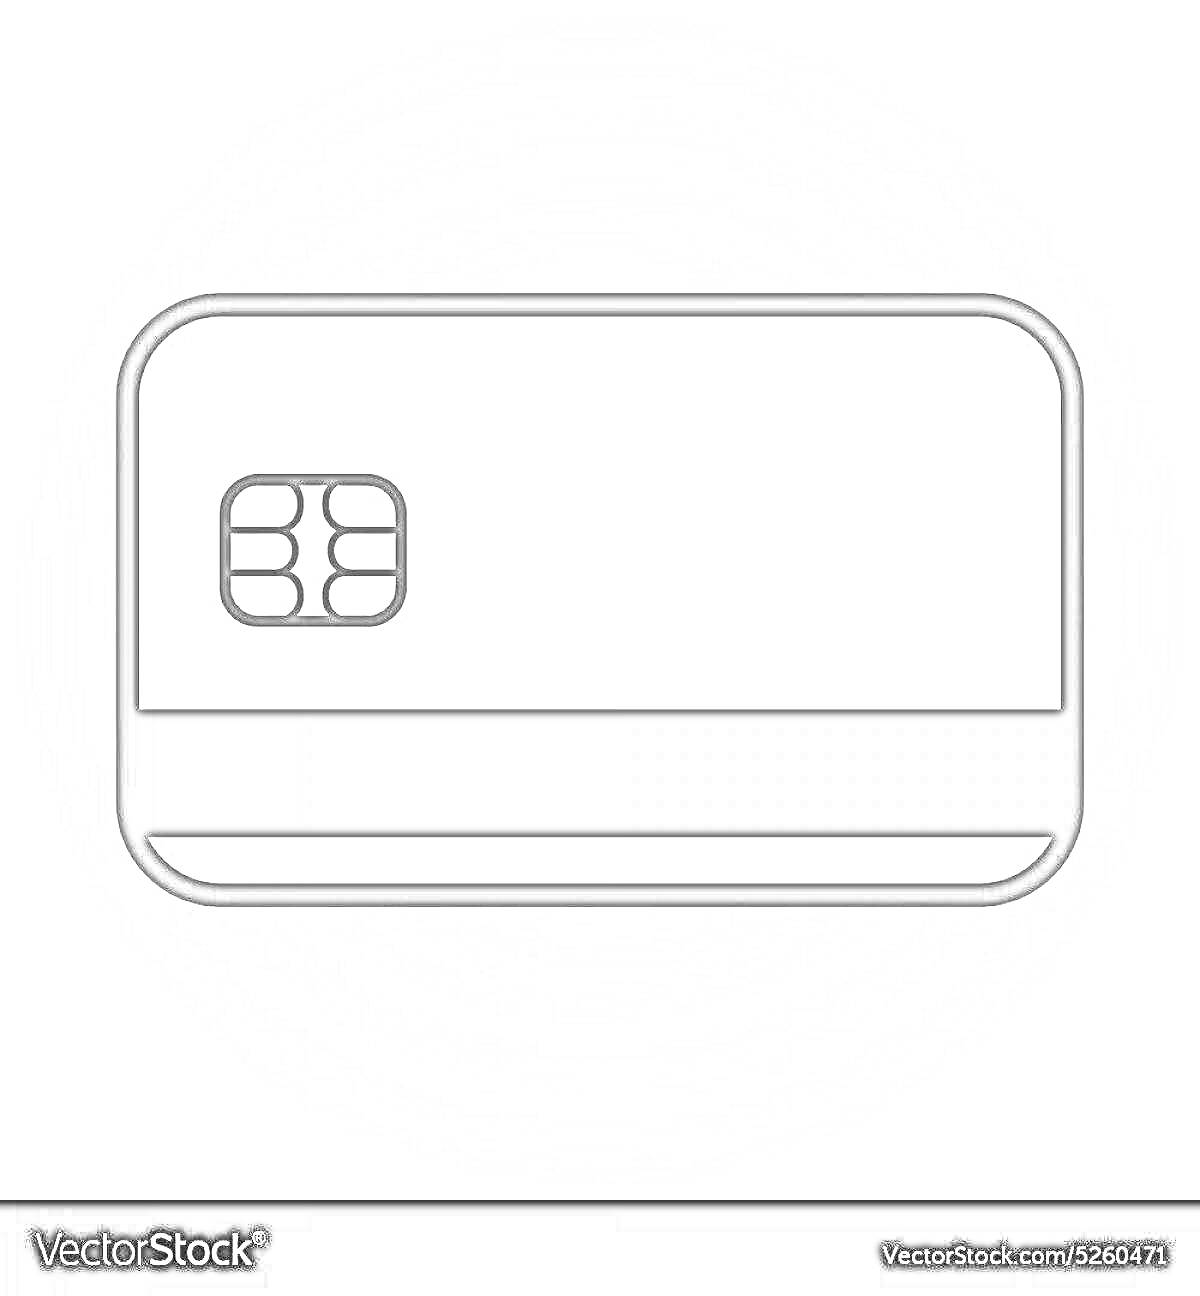 банковская карта с чипом и магнитной полосойна белом фоне